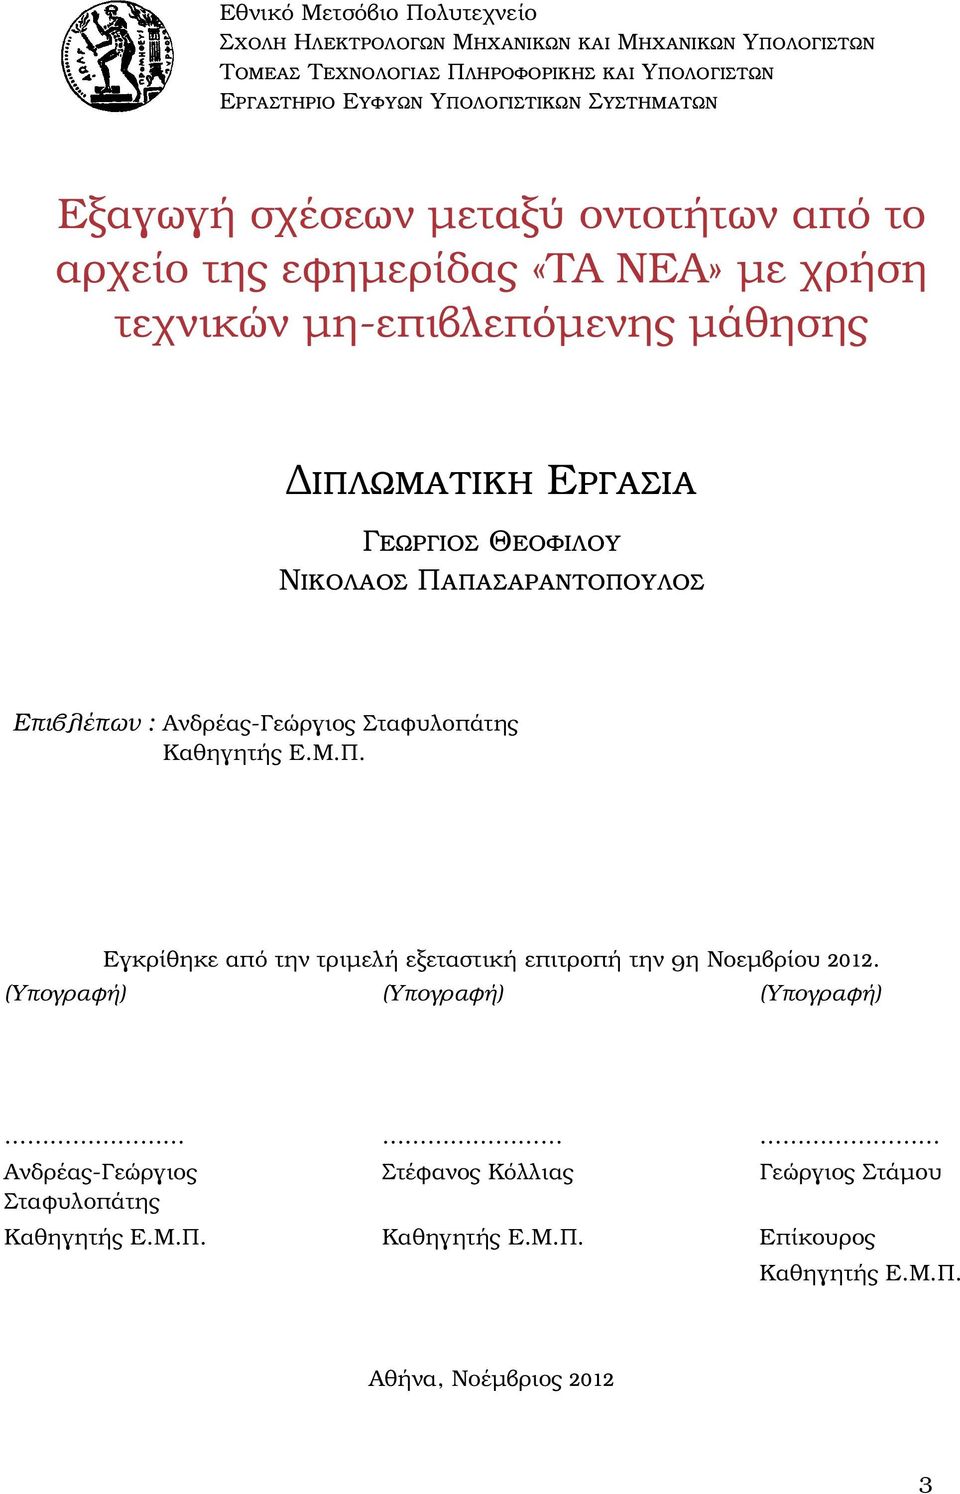 Νικολαος Παπασαραντοπουλος Επιβλέπων : Ανδρέας-Γεώργιος Σταφυλοπάτης Καθηγητής Ε.Μ.Π. Εγκρίθηκε από την τριμελή εξεταστική επιτροπή την 9η Νοεμβρίου 2012.